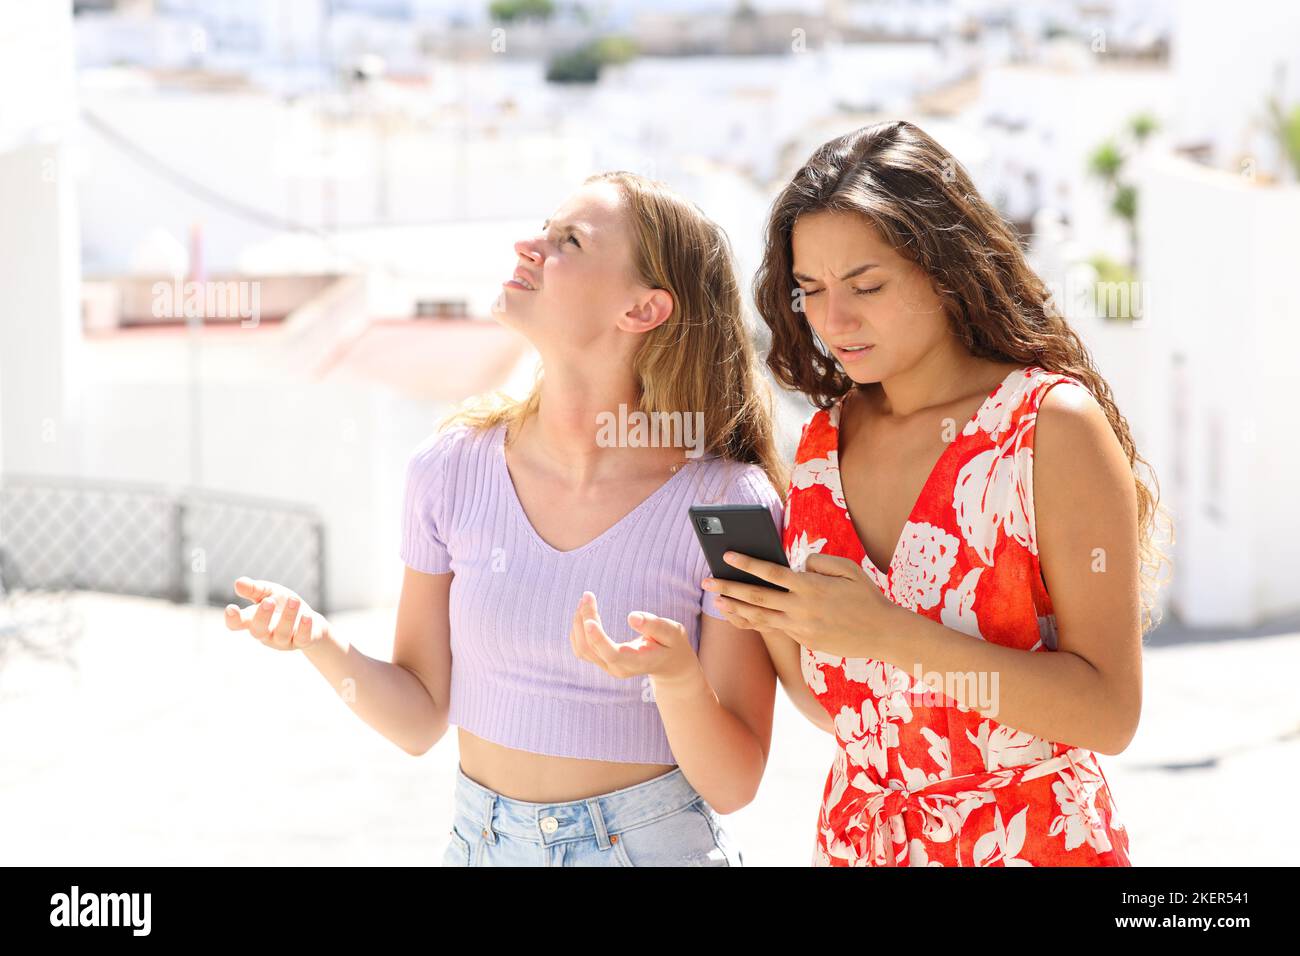 Verlorene Touristen, die im Urlaub in einer Stadt auf der Straße ihr Smartphone checken Stockfoto